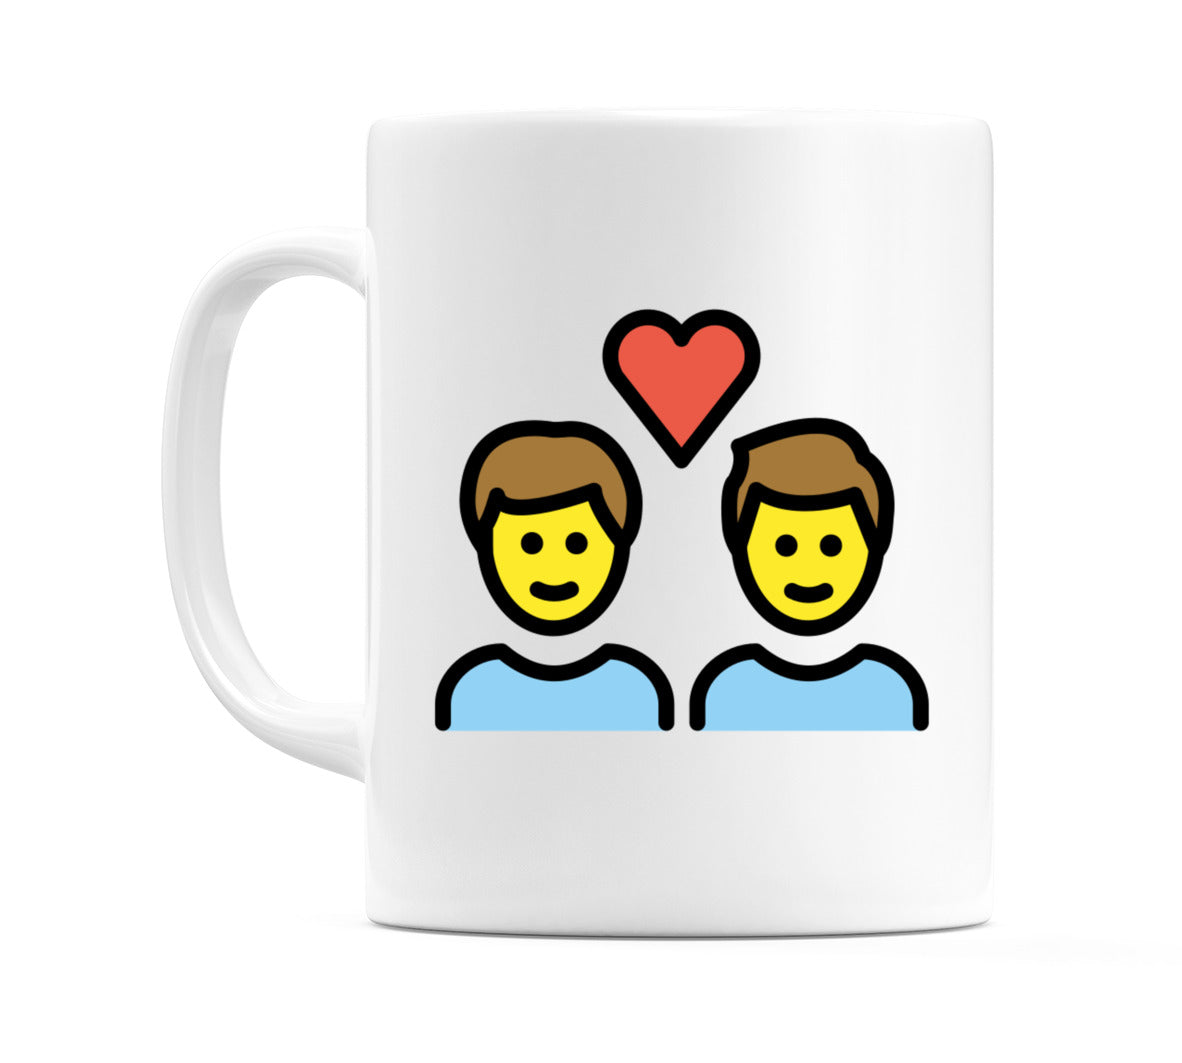 Couple With Heart: Male, Male Emoji Mug